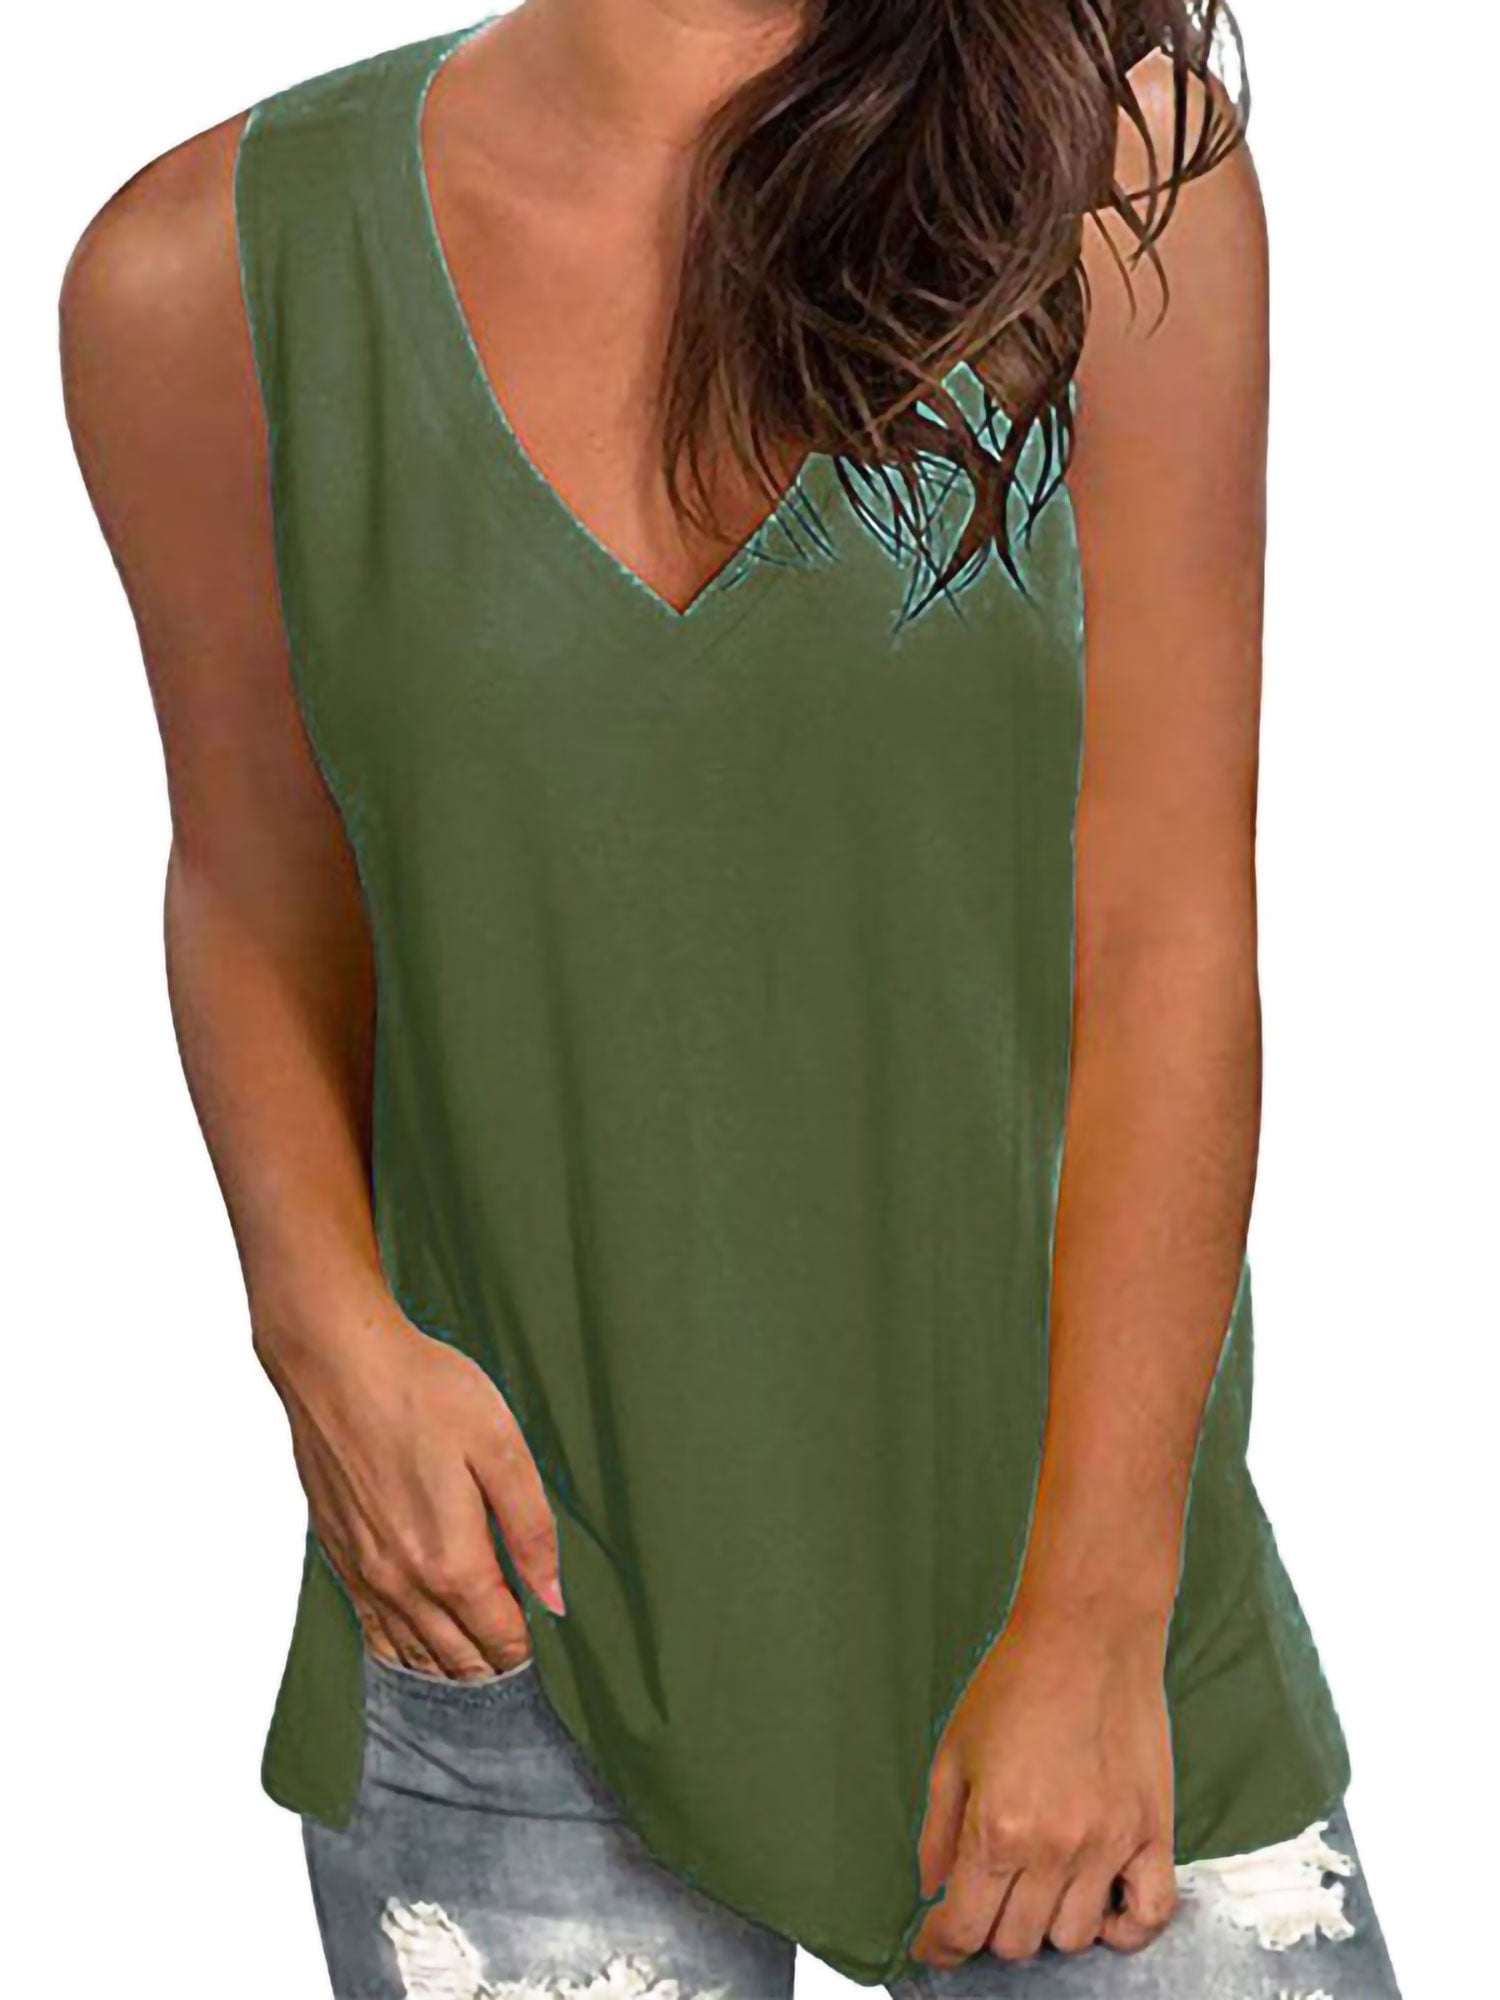 Women Summer Loose Vest Sleeveless Shirt Blouse Casual Cotton Tank Top T-Shirt